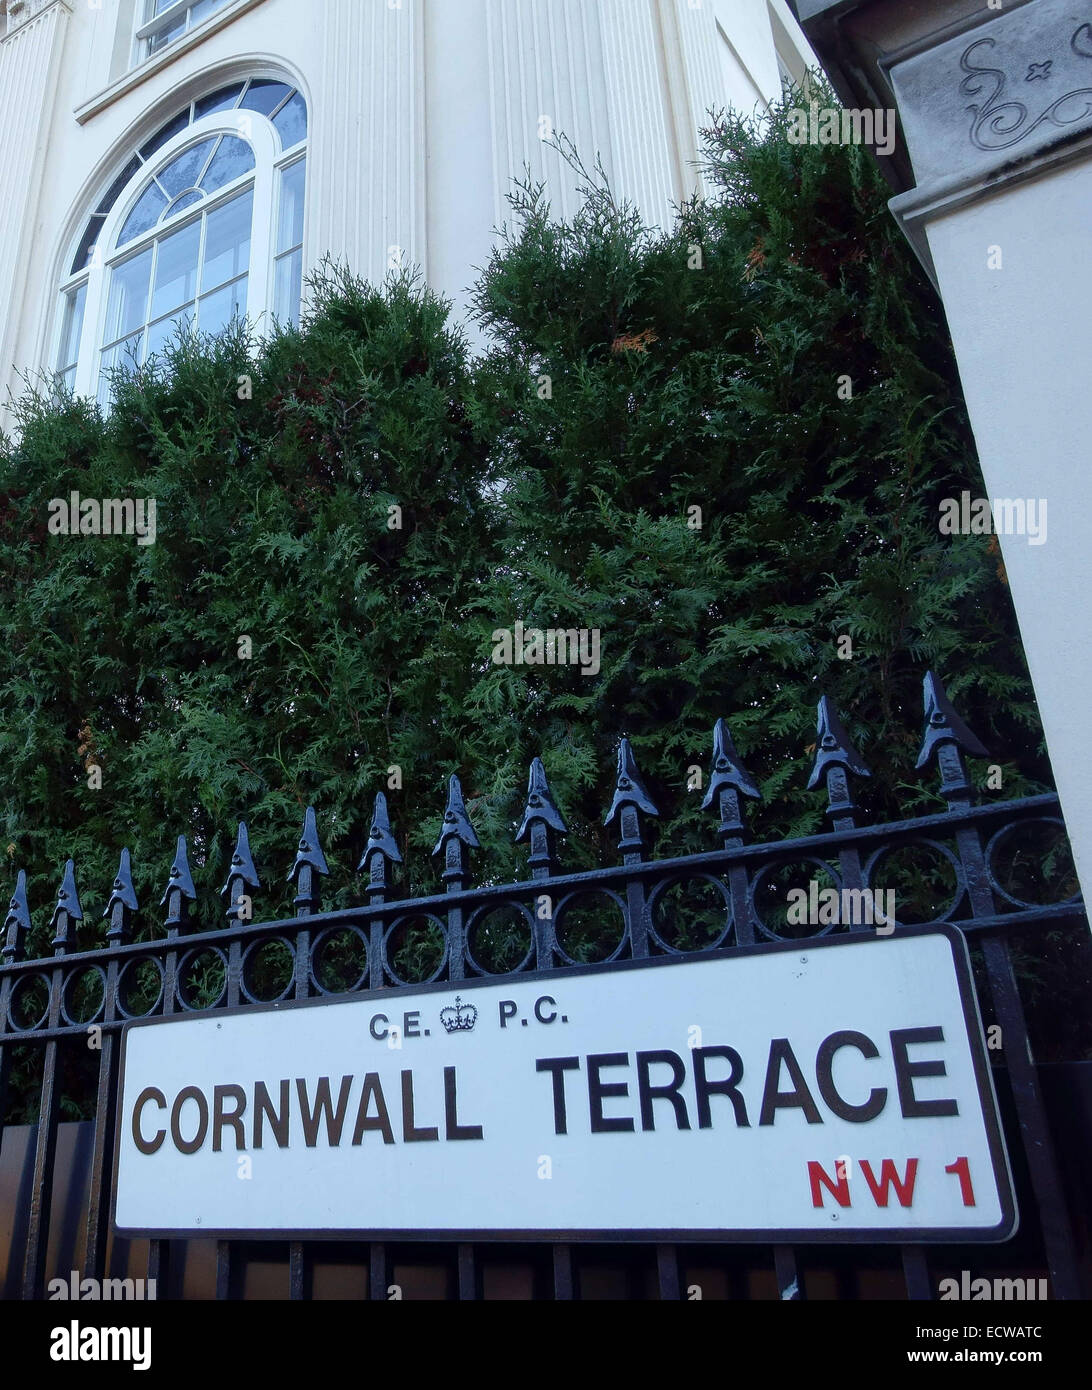 Katar Königsfamilie berichtet, dass drei riesigen Häusern in Cornwall Terrasse, Regents Park, London 120 Mio. Pfund bezahlt haben Stockfoto